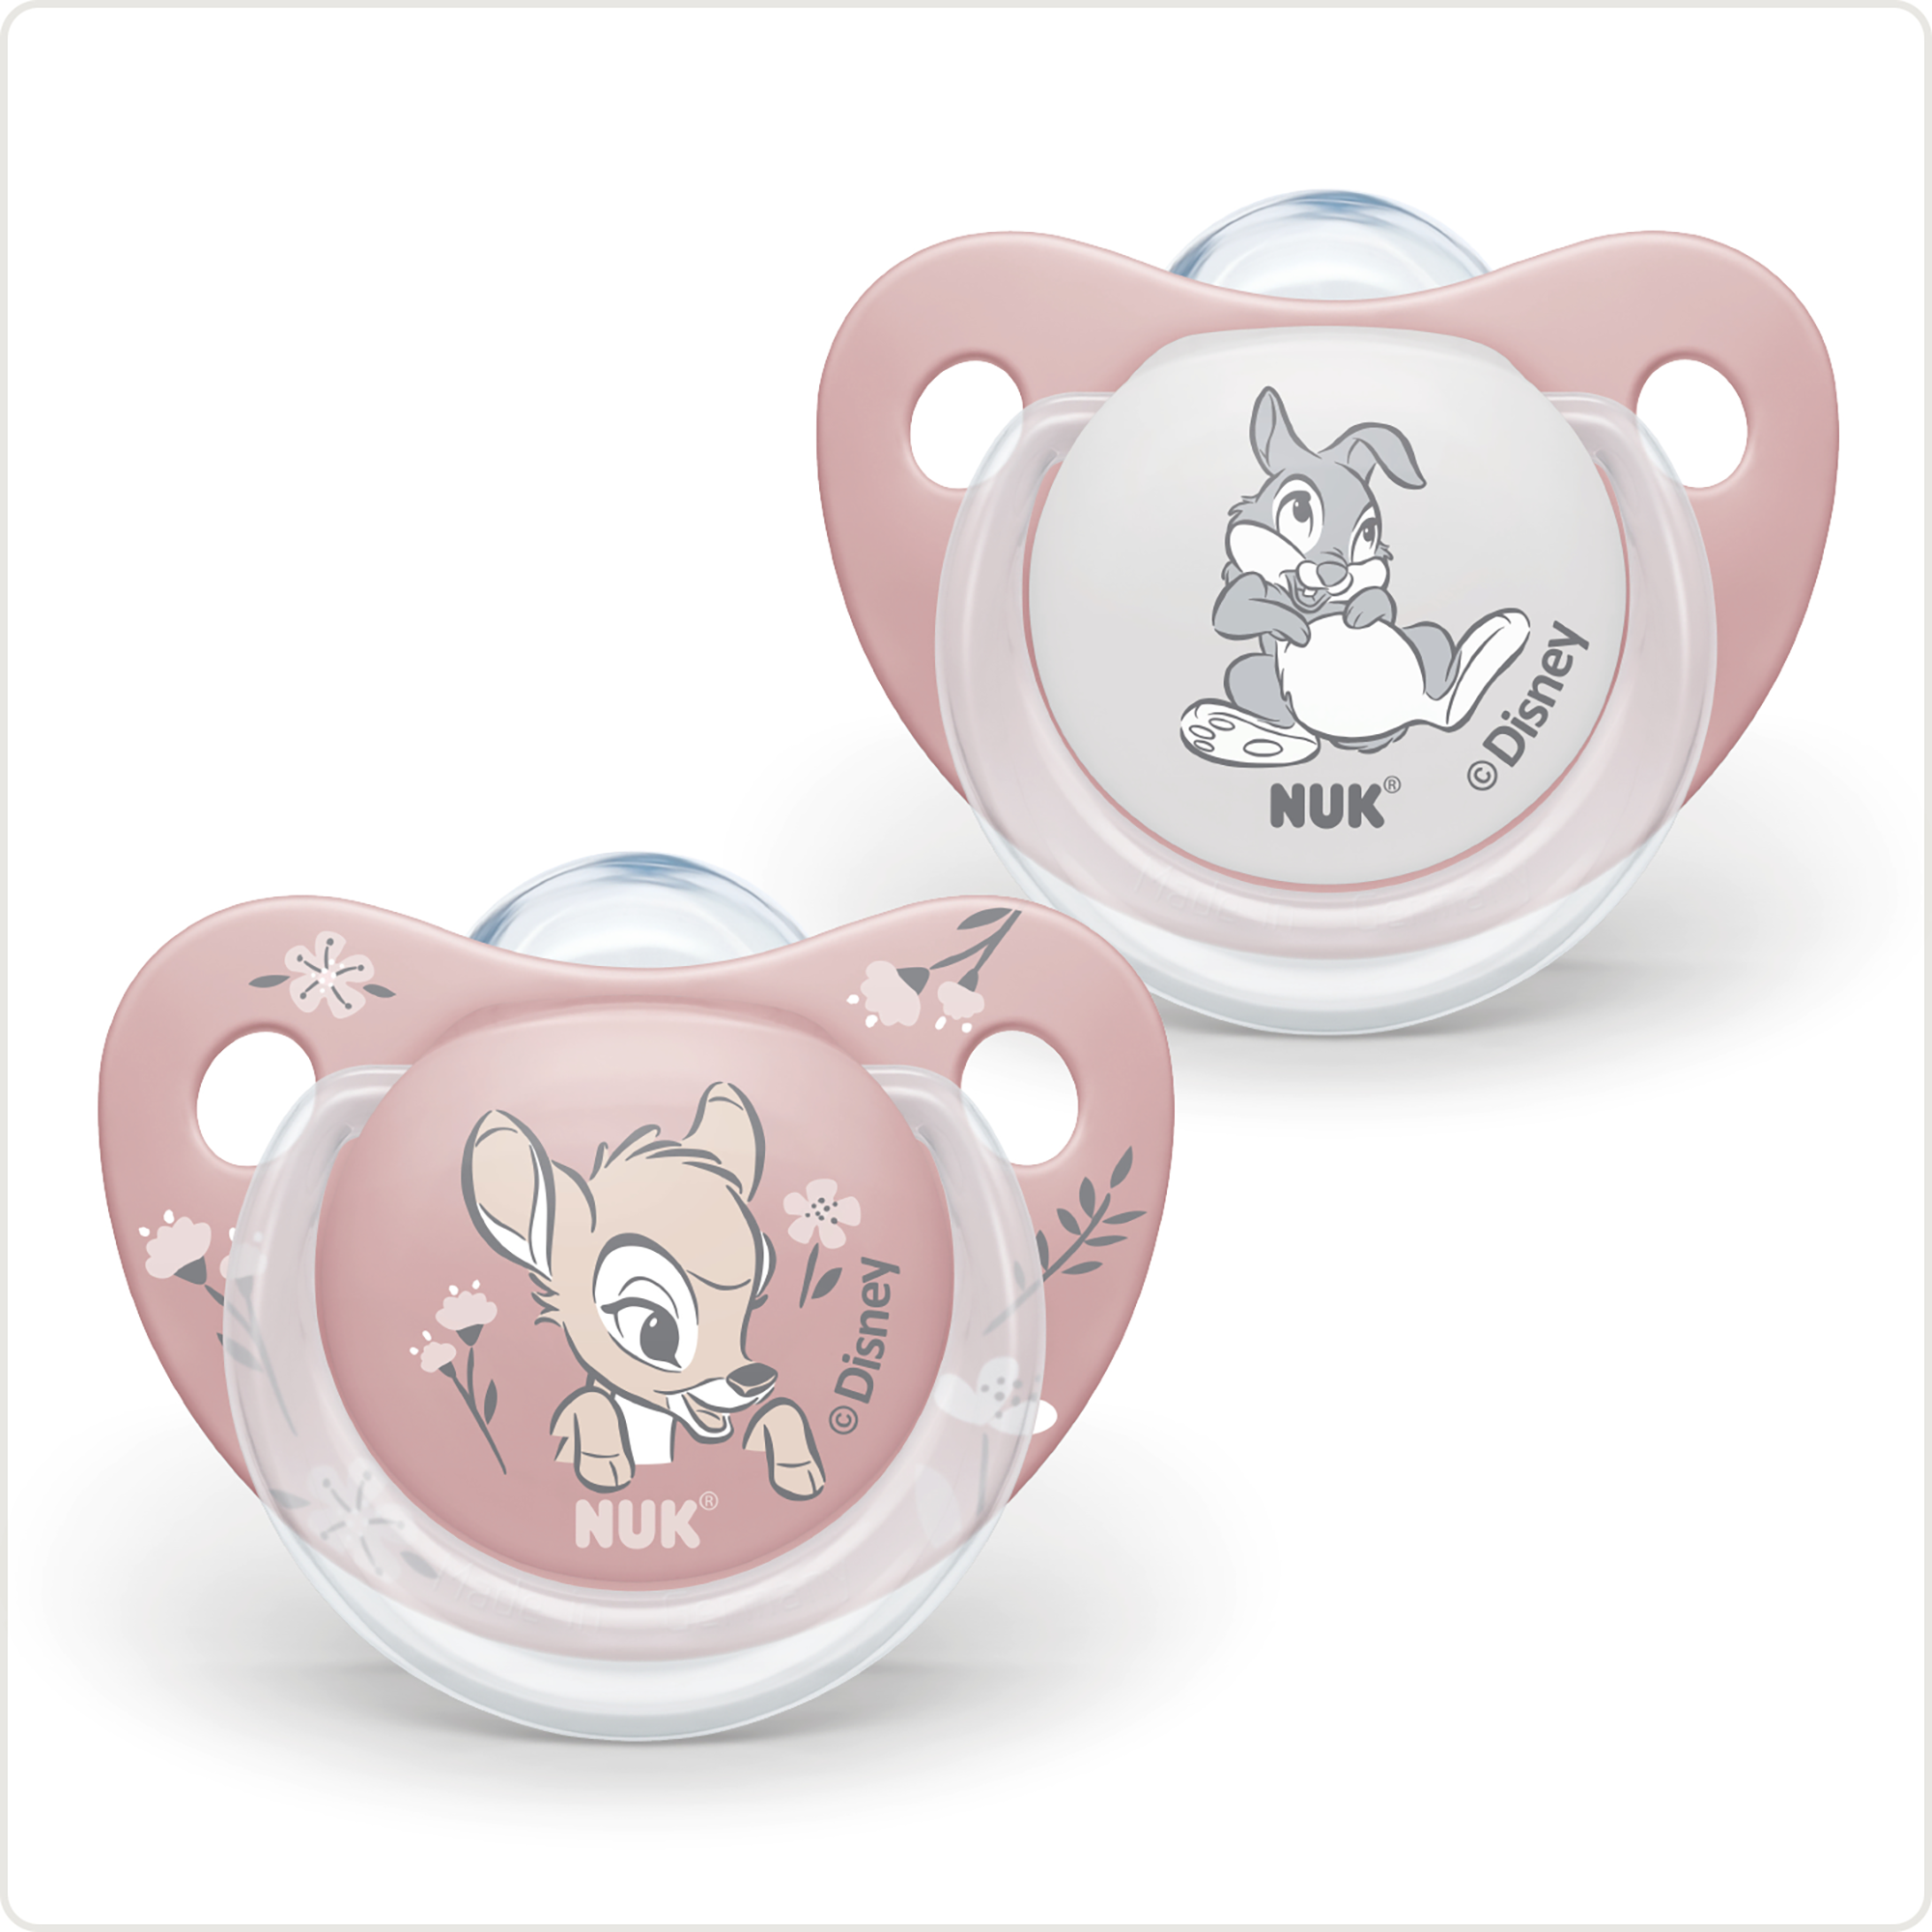 Beruhigungssauger Disney Bambi 6 - 18 Monate NUK Pink Rosa 2000583101208 1